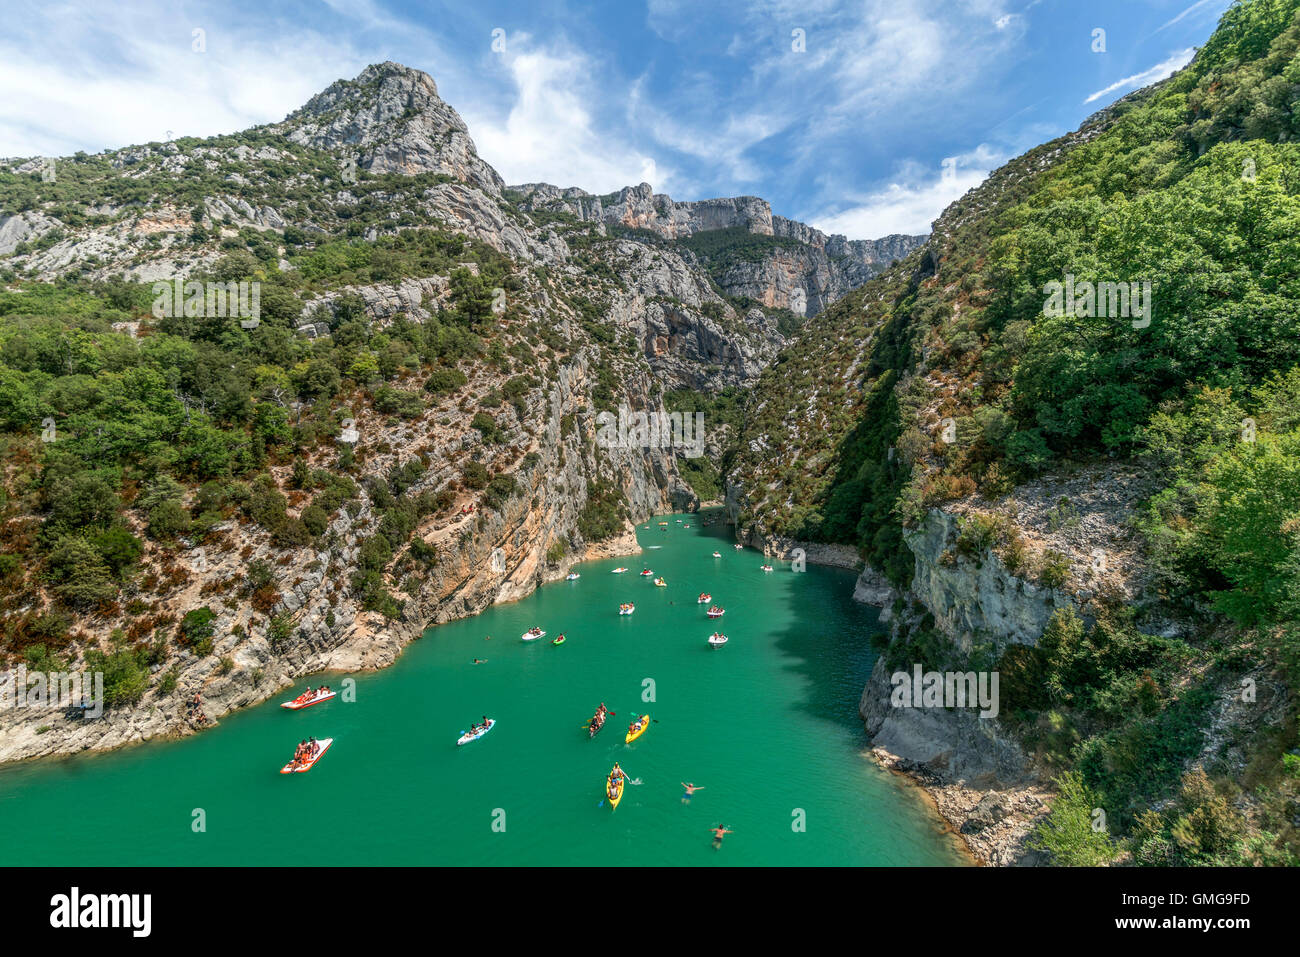 Water sports in Gorges du Verdon, Peddleboats, Canoes,  Alpes-de-Haute-Provence, Provence-Alpes-Côte d'Azur, France Verdon Regio Stock Photo